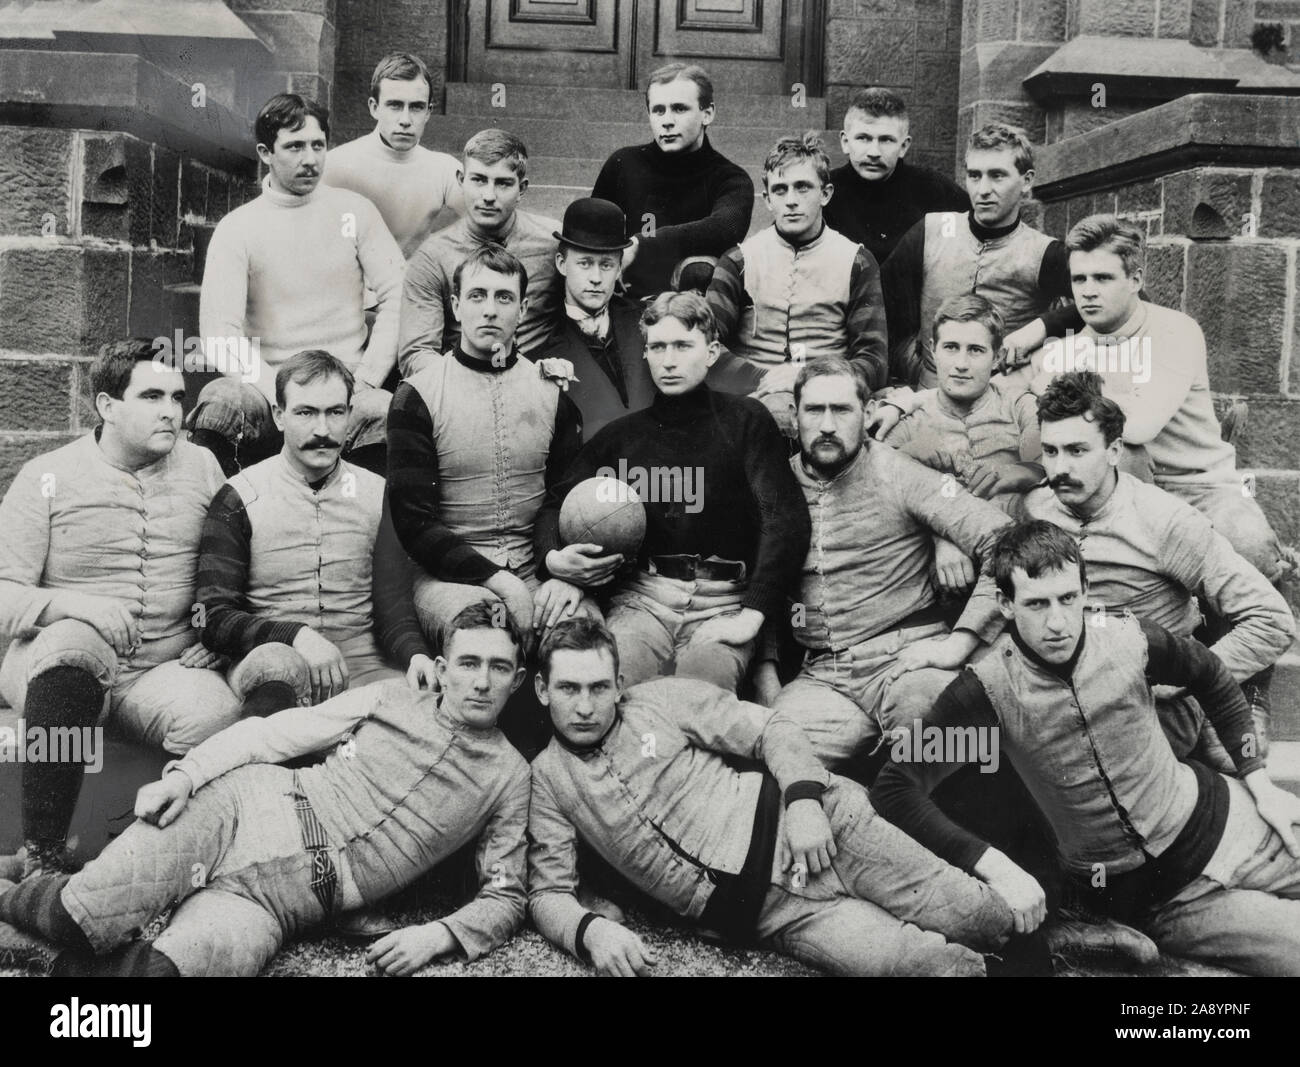 L'équipe de football - 1891 - L'Université Rutgers - photo présente le portrait de groupe de l'ordre 1891 Rutger équipe de football. Banque D'Images